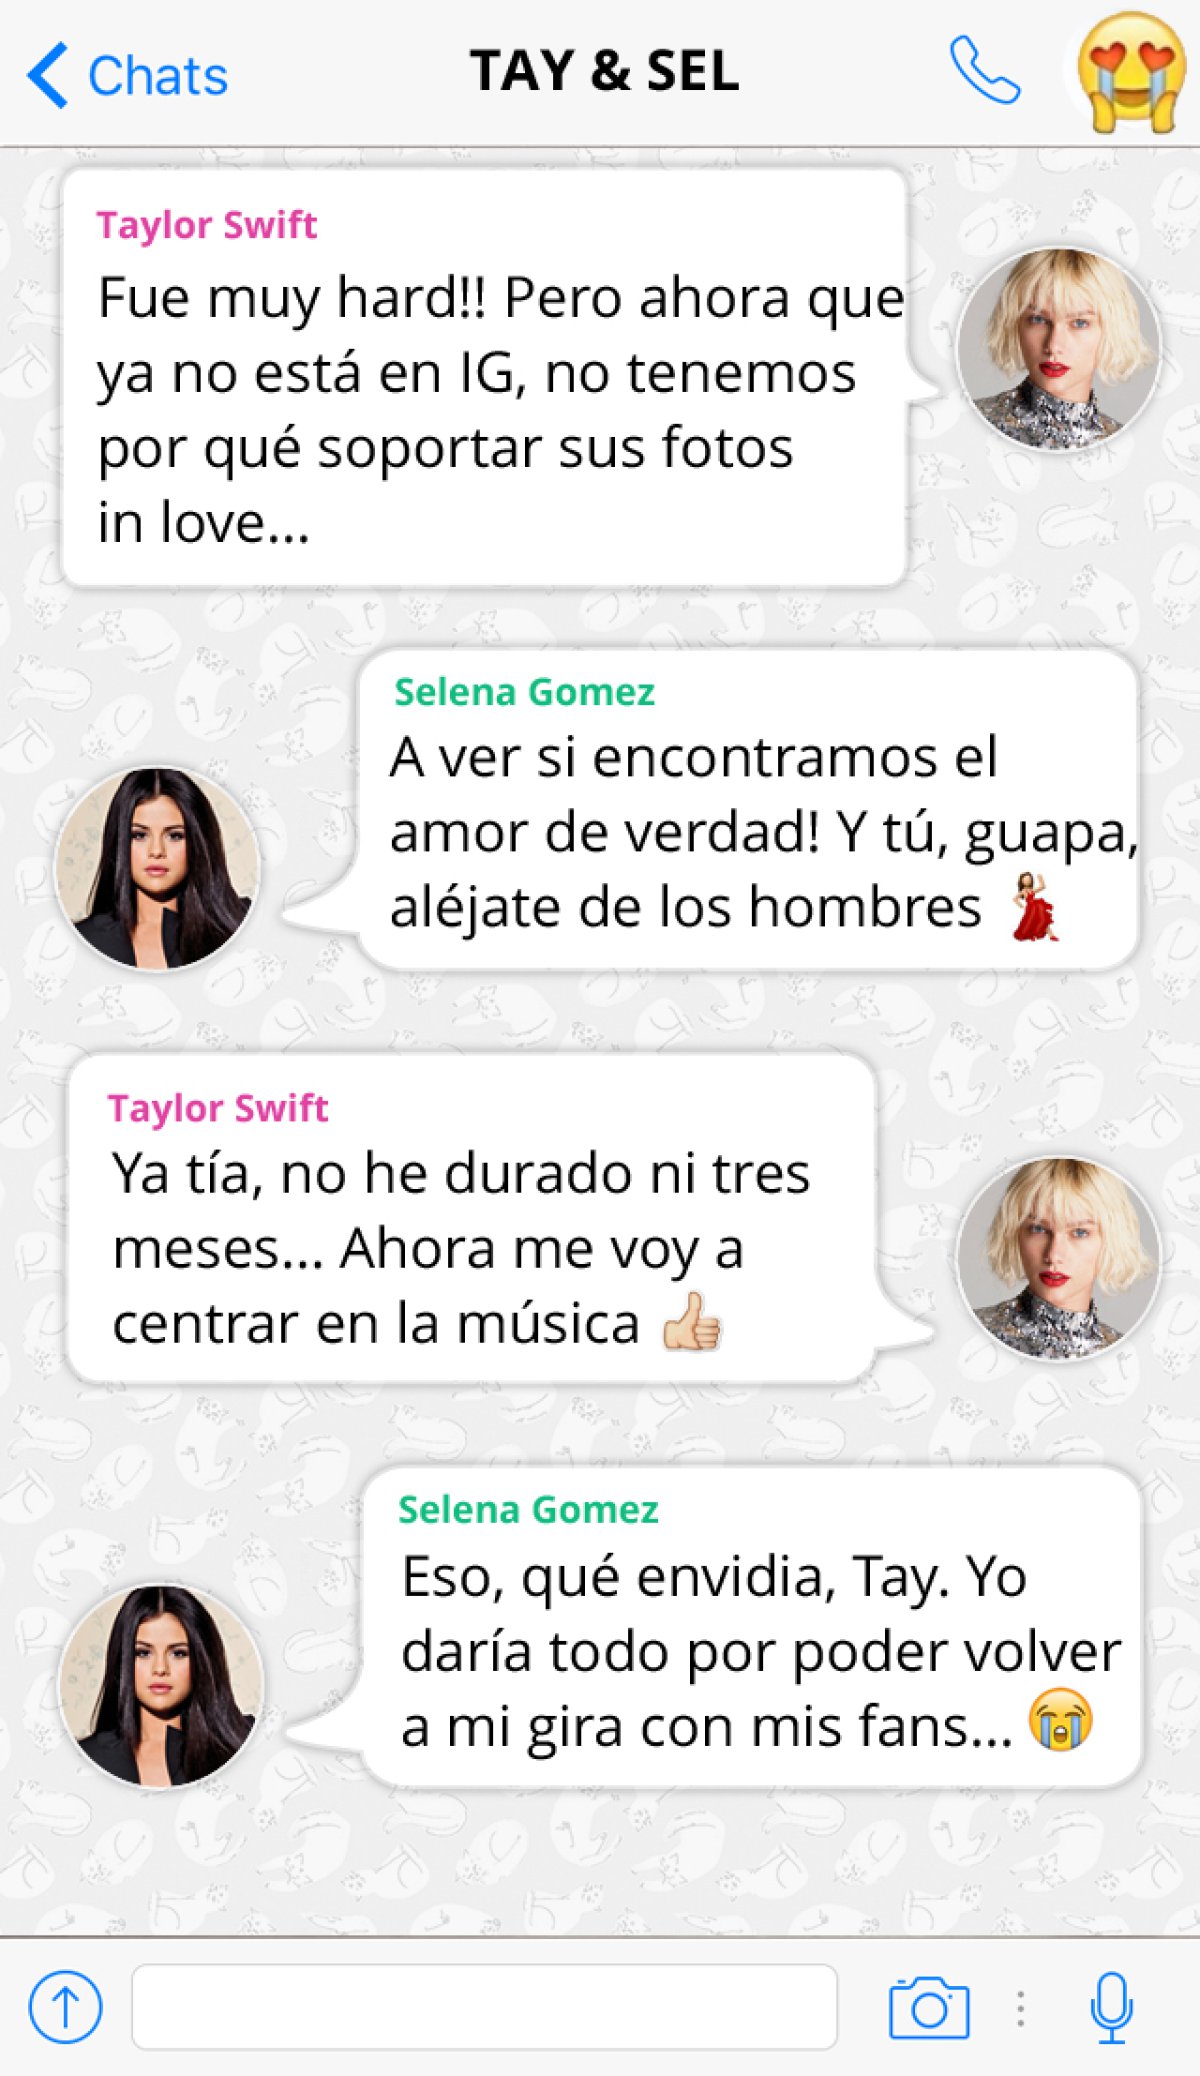 La conversación de WhatsApp de Taylor Swift y Selena Gomez